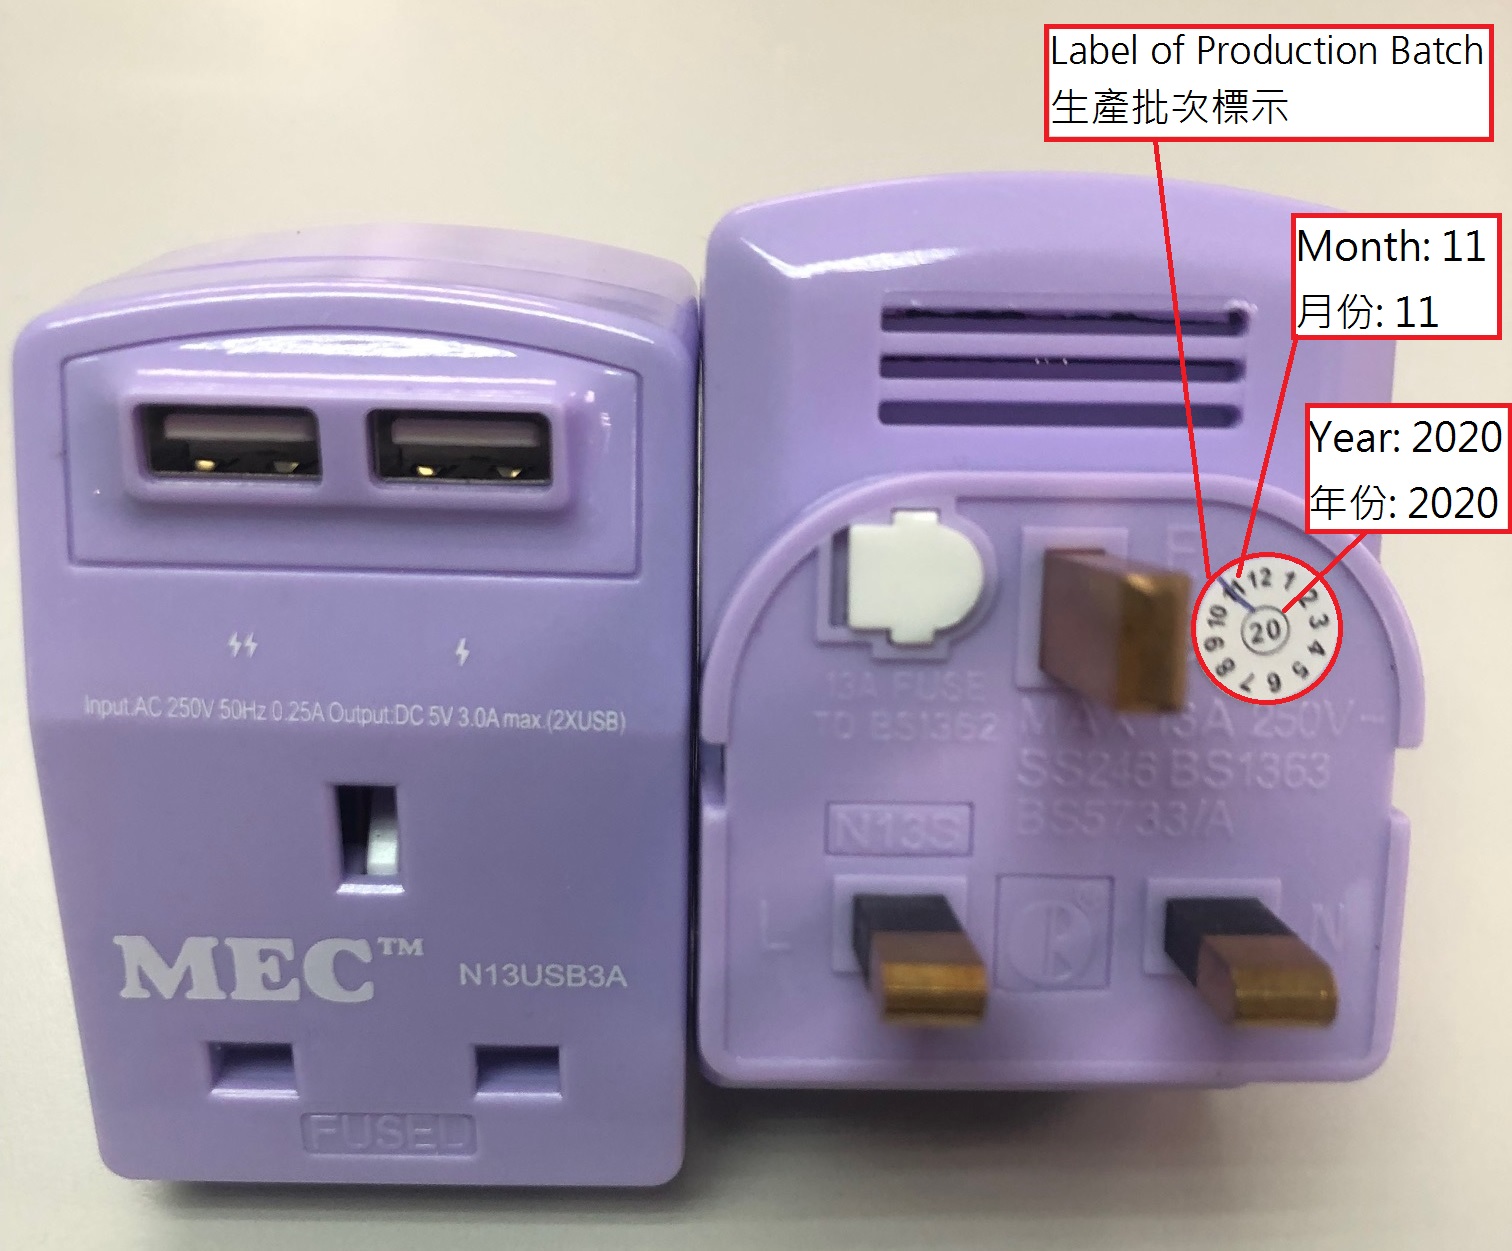 紫色「 MEC 」牌型号 N13USB3A 适配接头，附标籤说明及产品标示